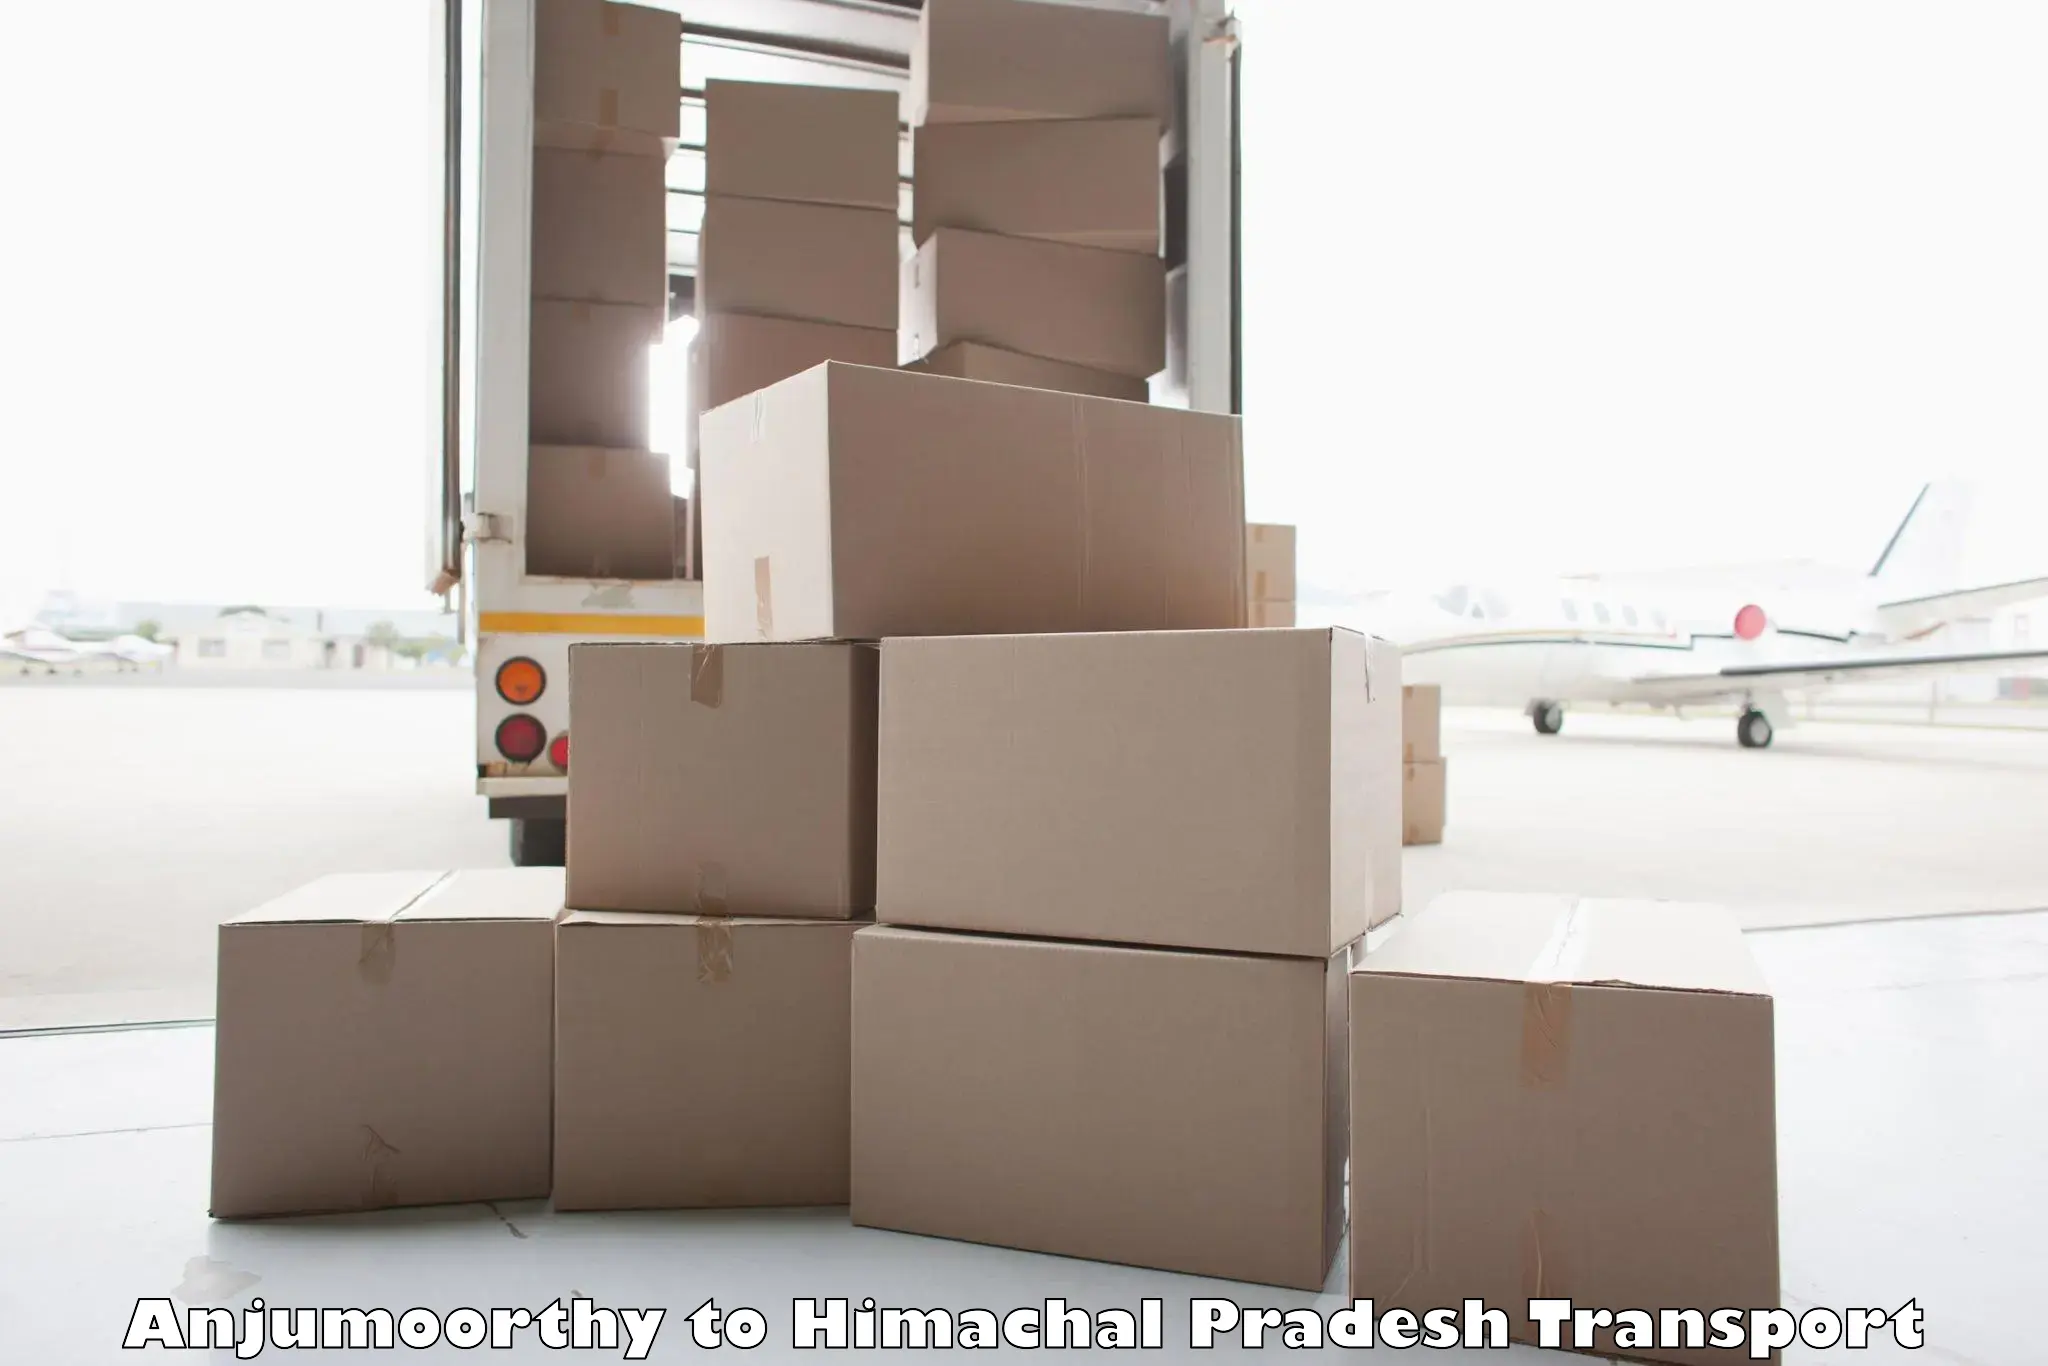 Container transport service Anjumoorthy to Una Himachal Pradesh